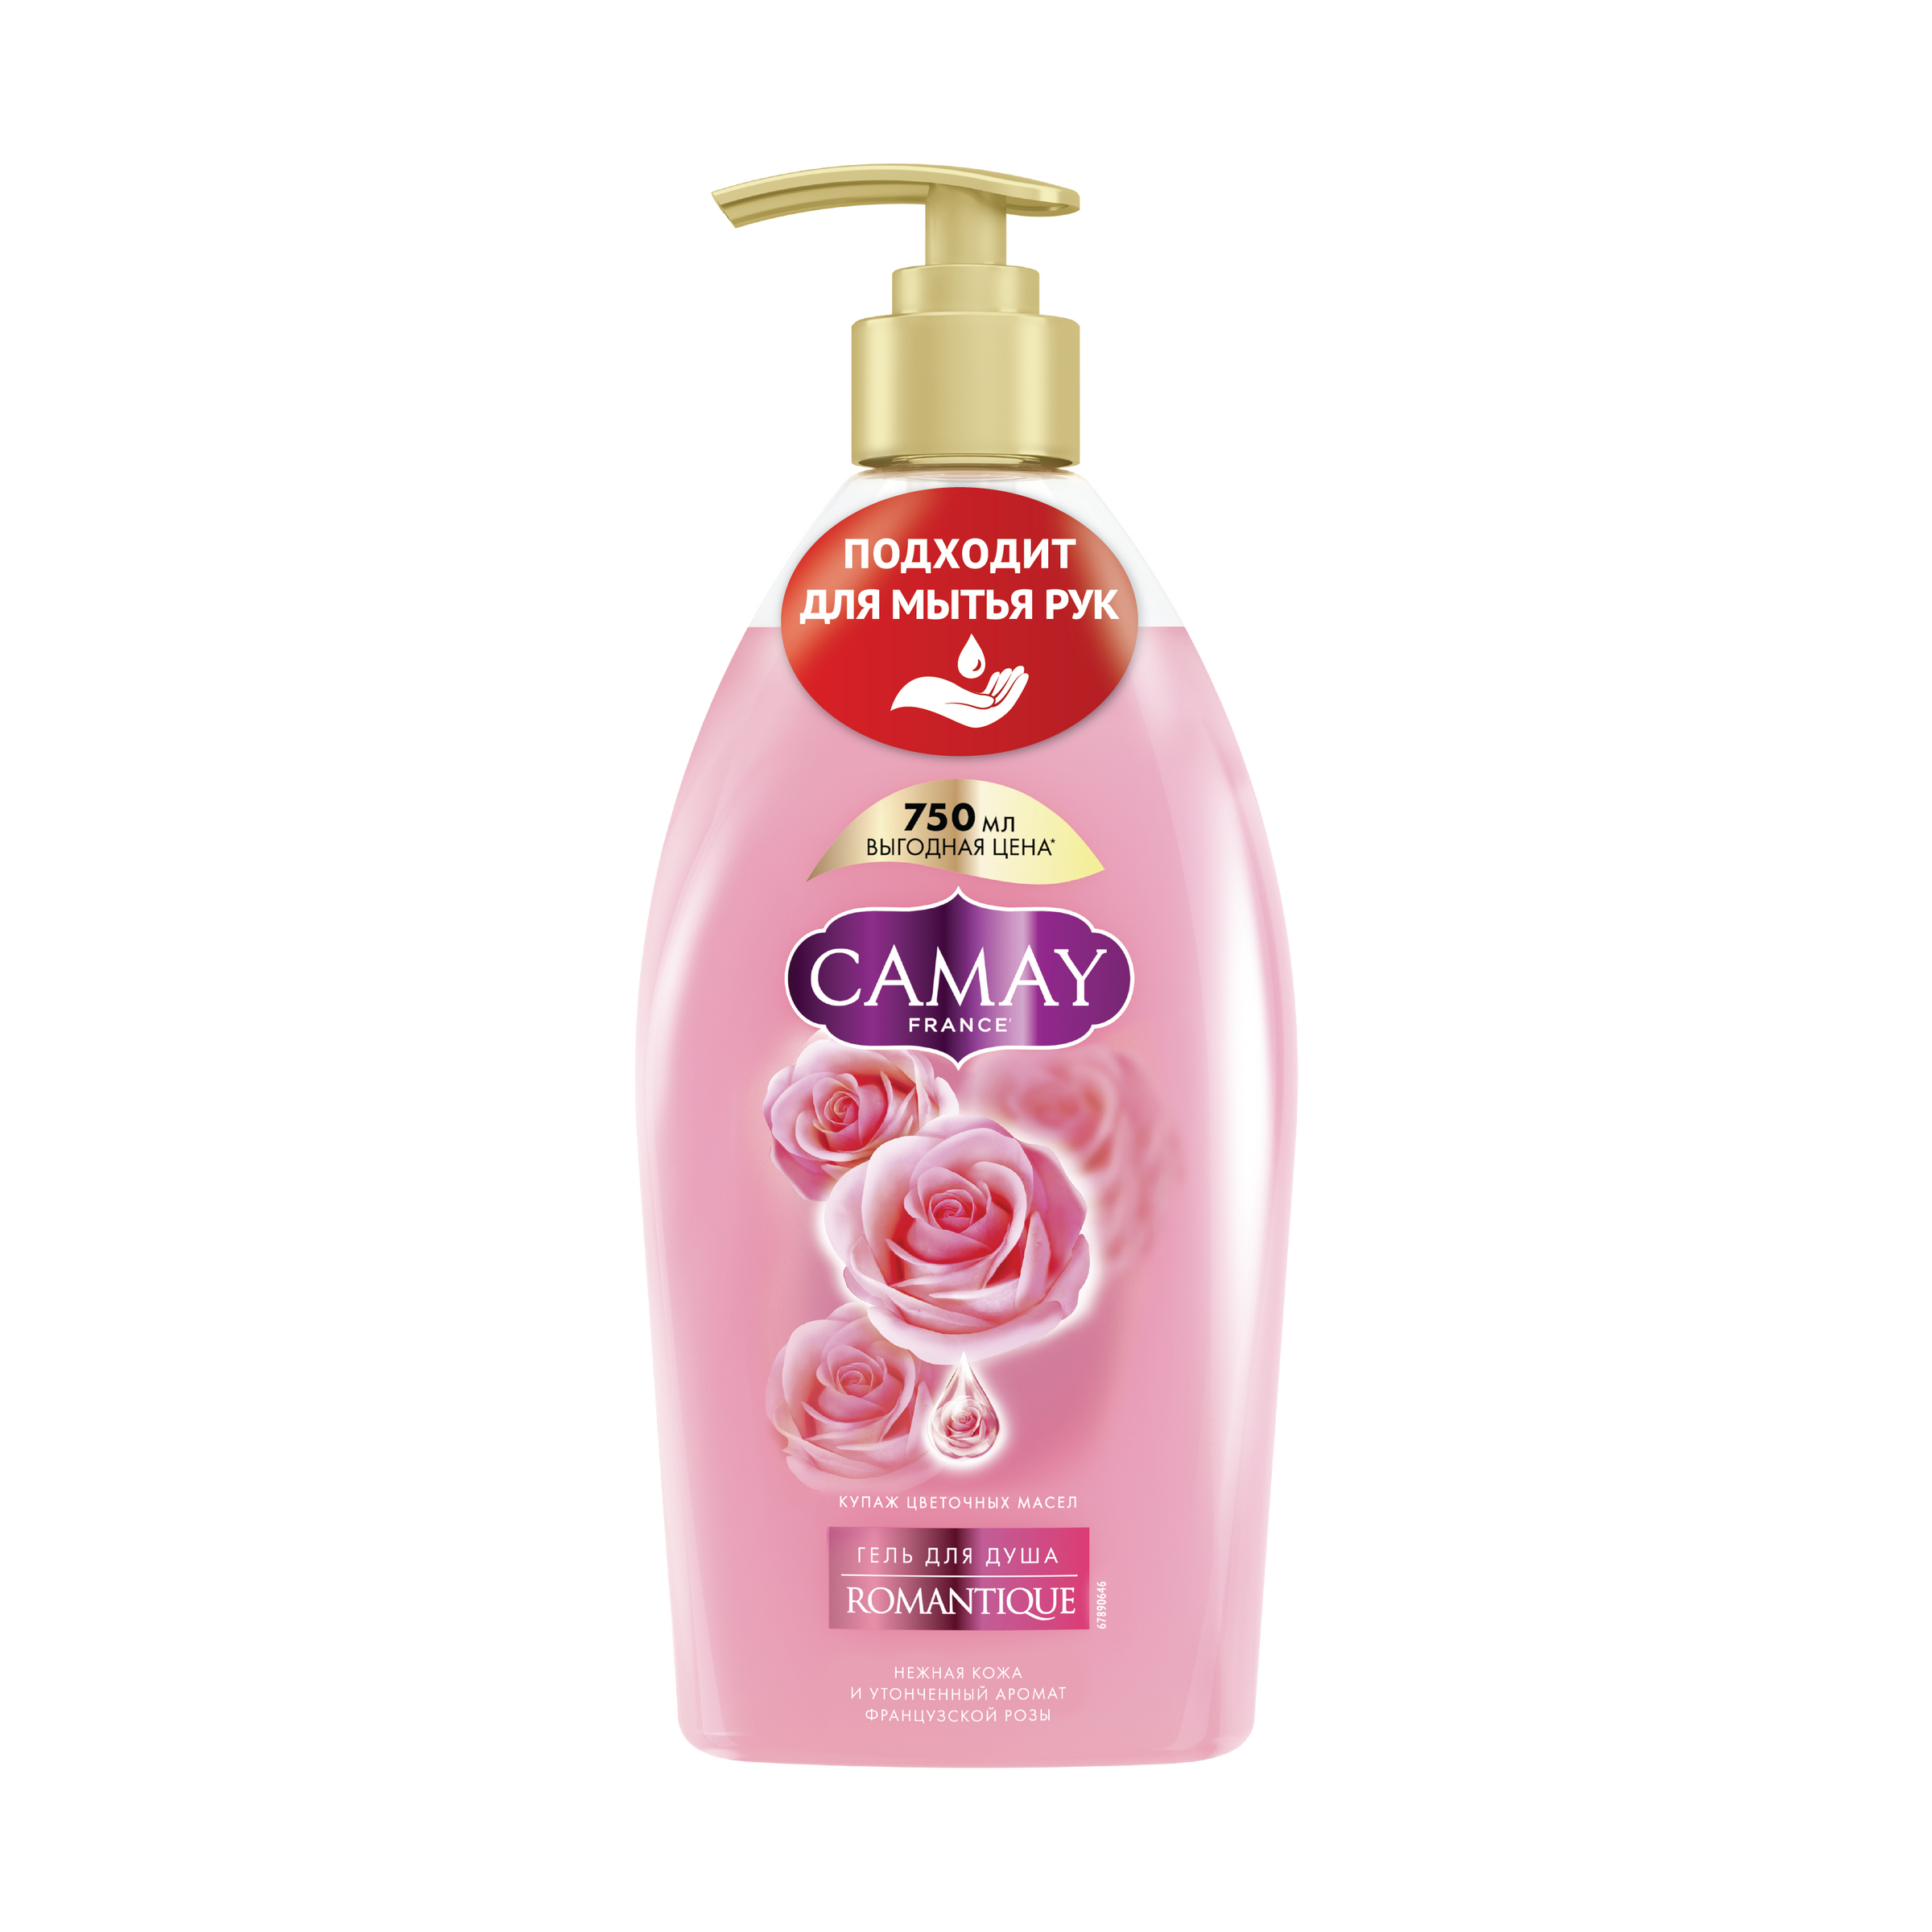 Гель для душа Camay Романтик для всех типов кожи, парфюмированный, 750 мл мыло camay botanicals romantique алые розы 85 г